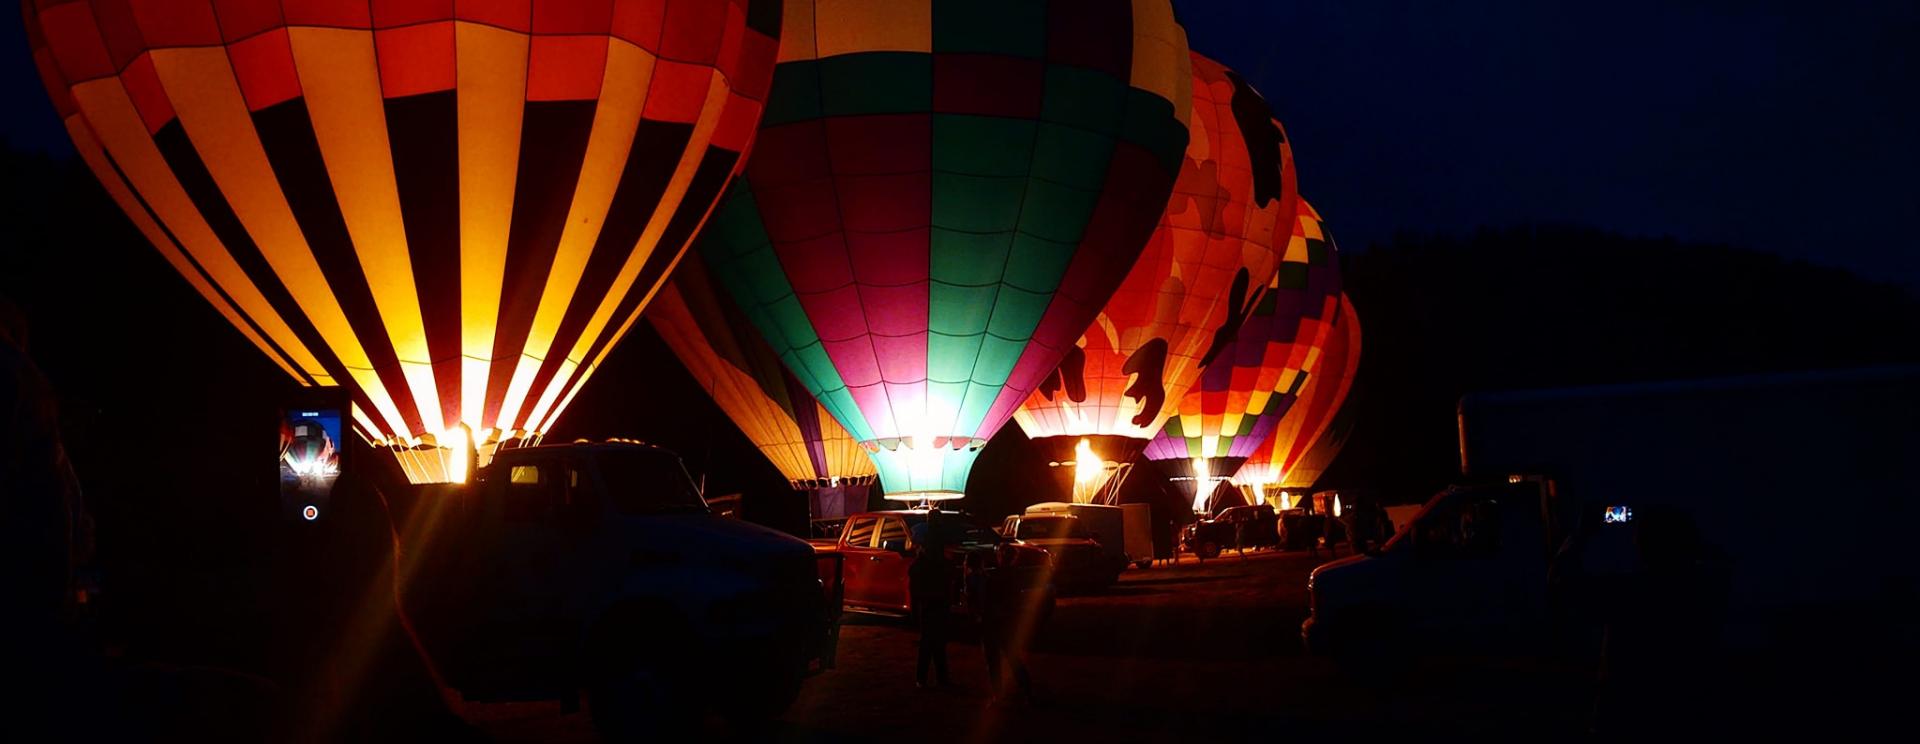 Fall River Hot Air Balloon Festival 